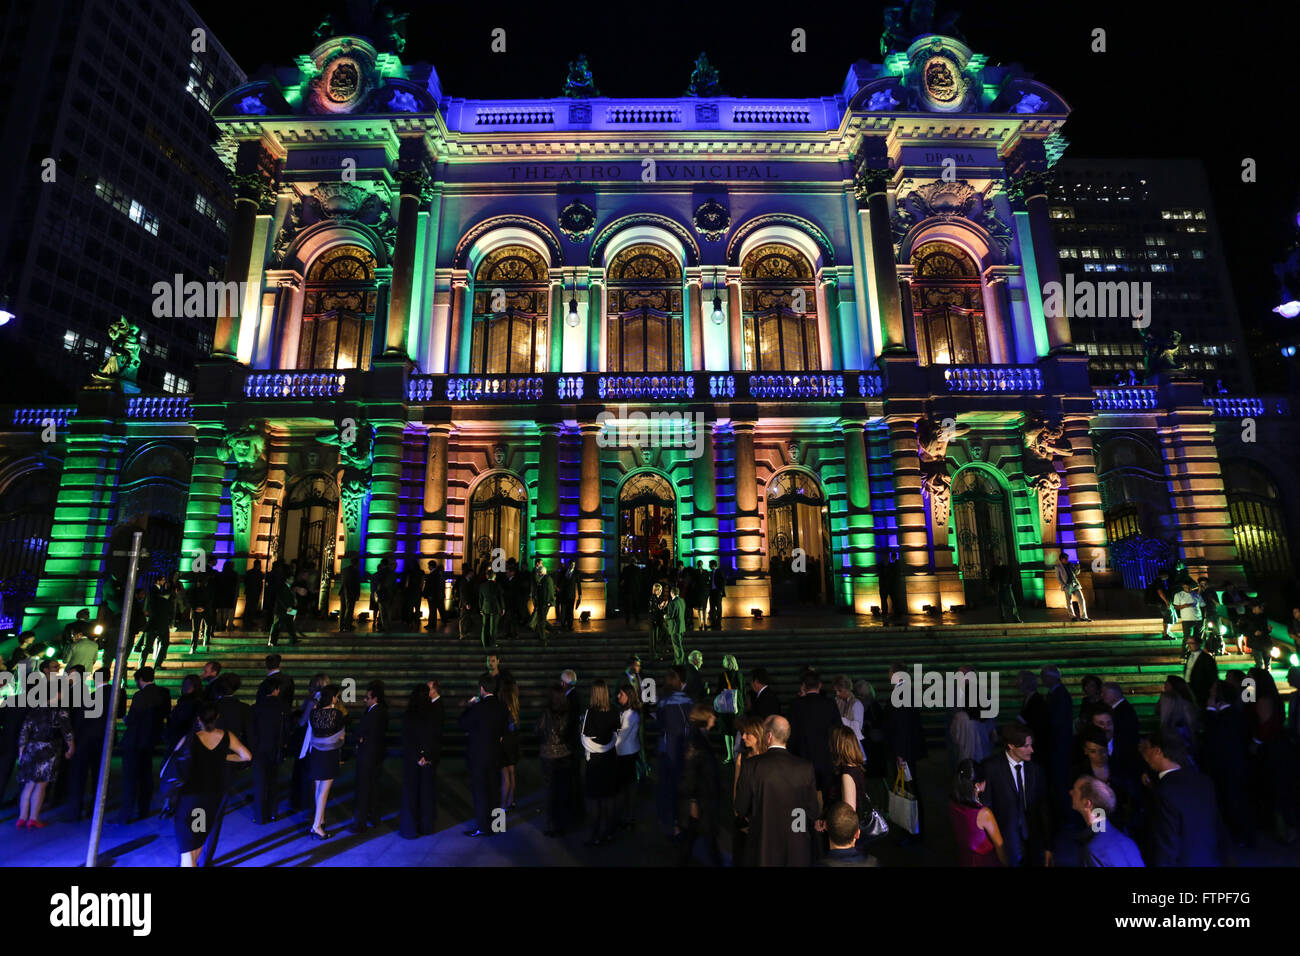 Théâtre Municipal de São Paulo de nuit décorée pour l'événement avec des lumières colorées Banque D'Images